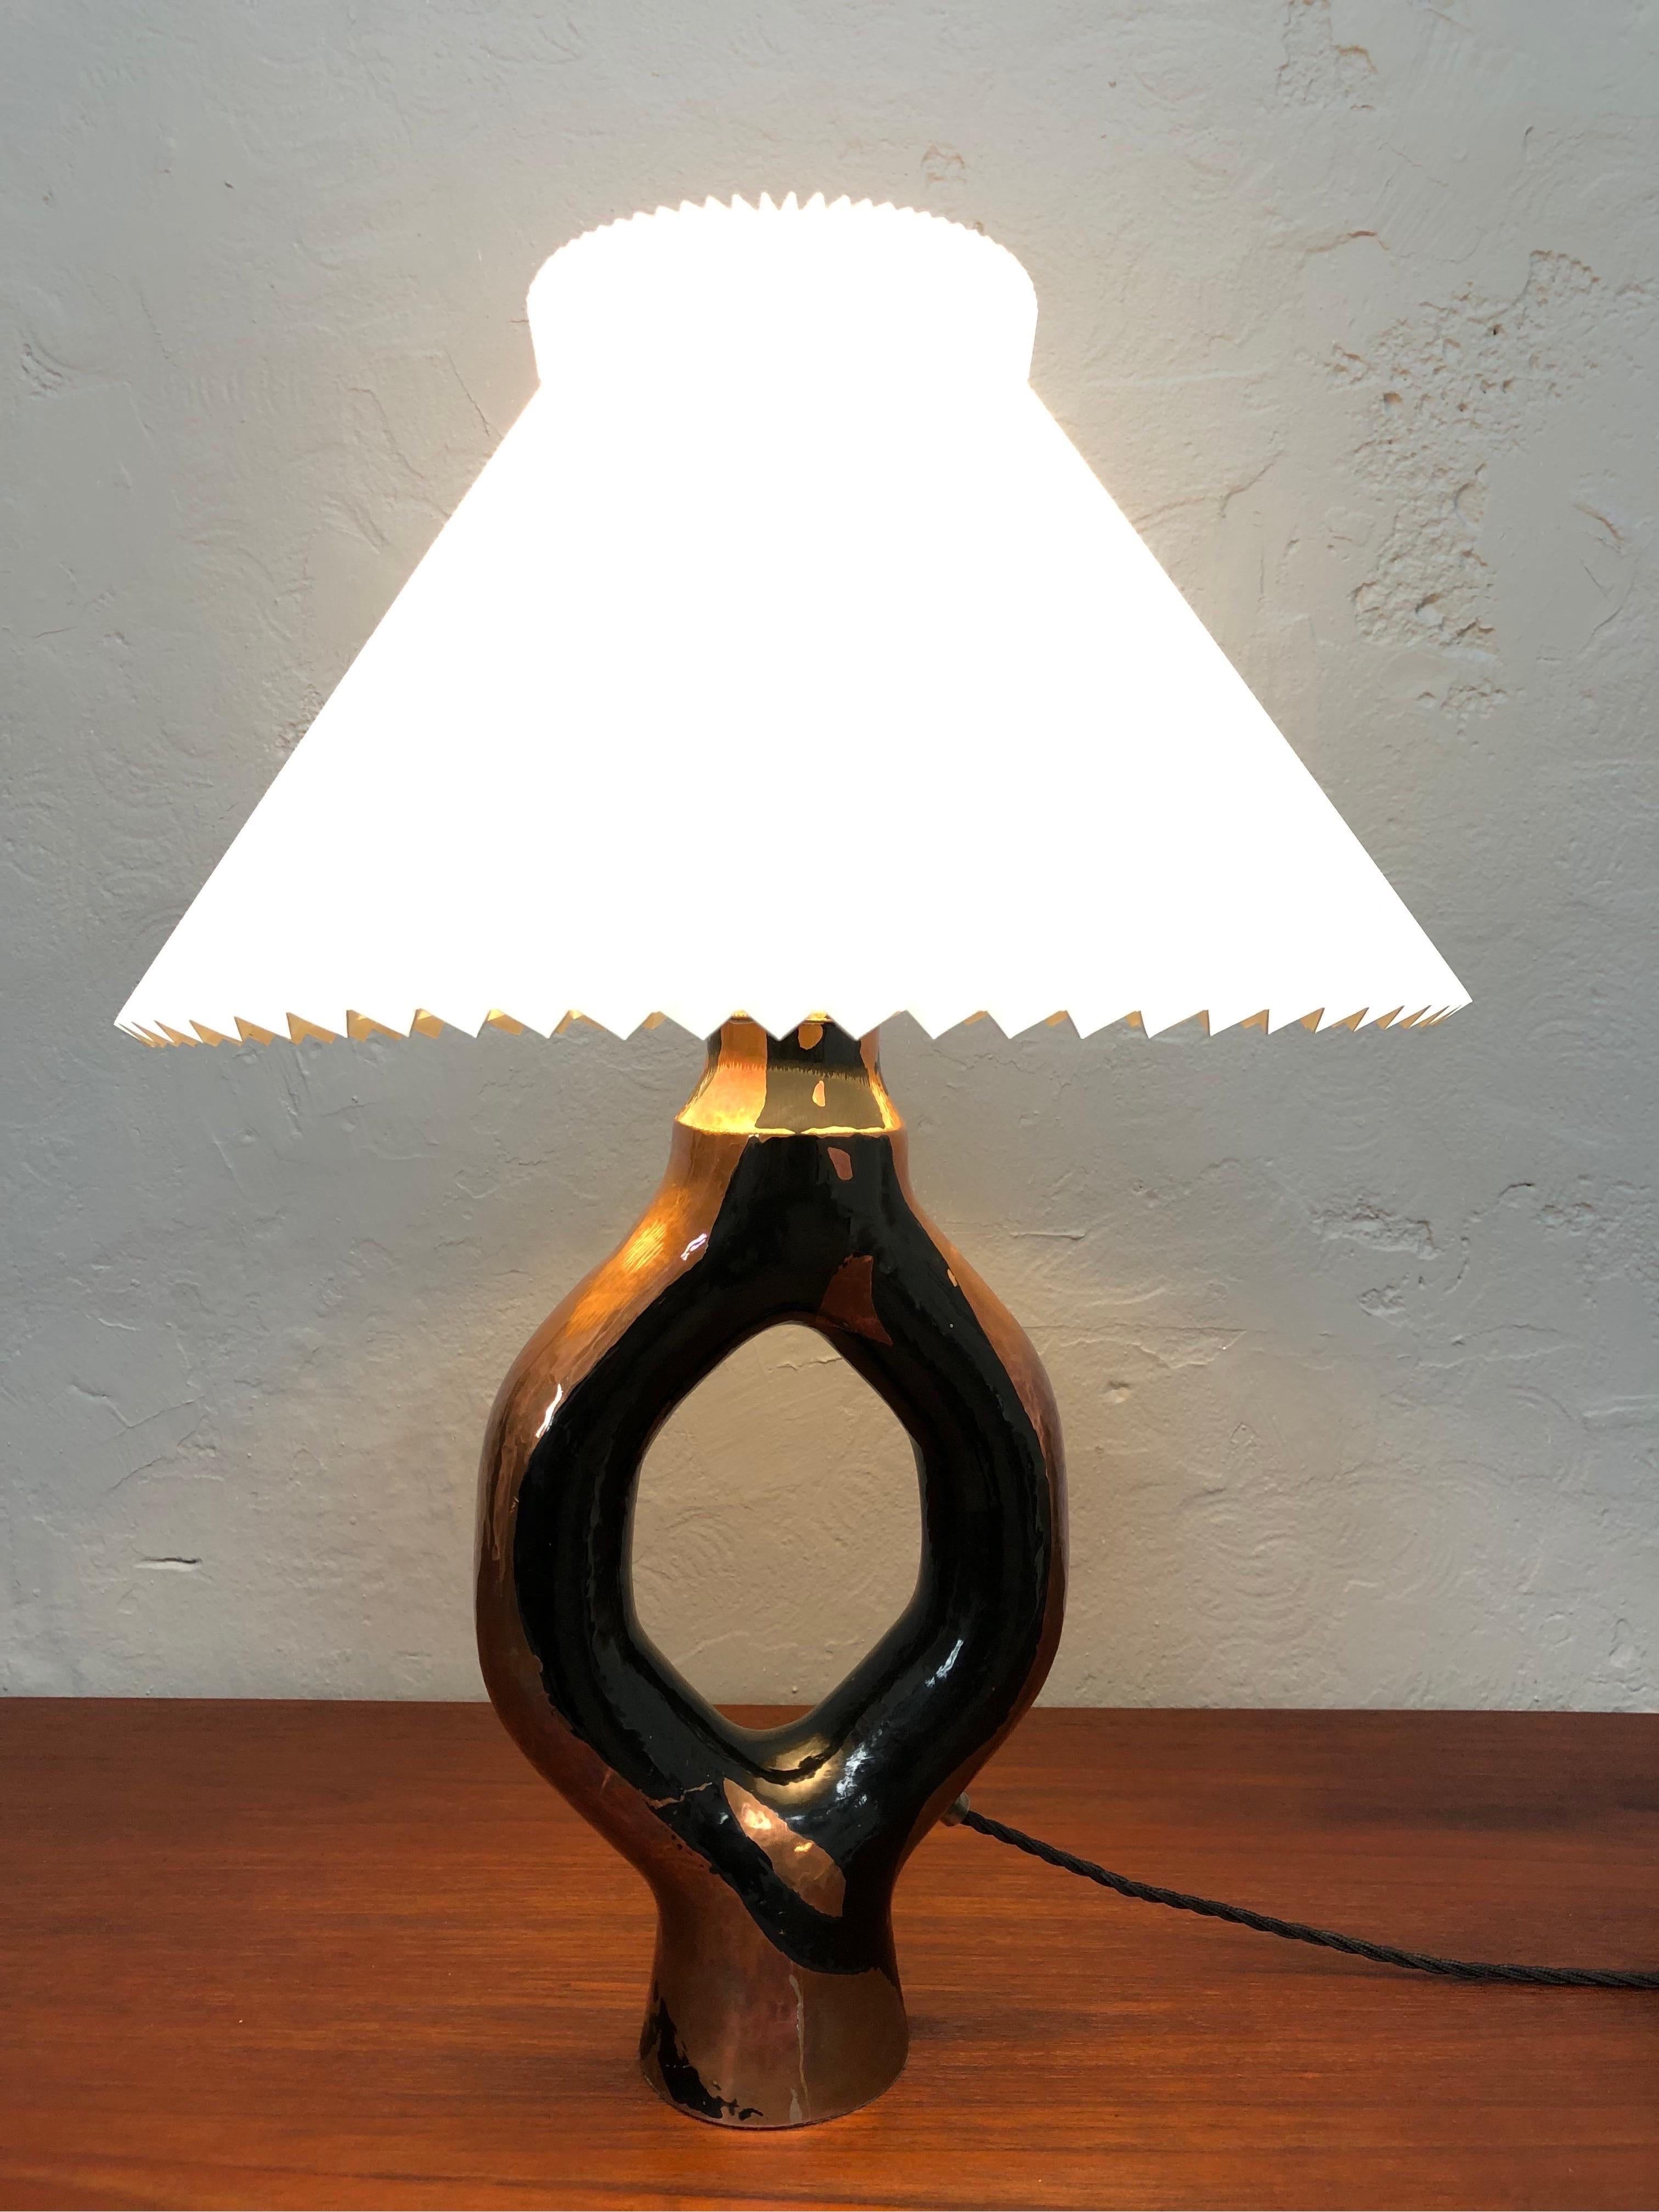 Skulpturale Vintage-Tischlampe aus den 1960er Jahren in Kupfer.
Gekonnt hergestellt in einem schönen historischen Design.
Es ist sehr wahrscheinlich, dass es sich um ein Stück UNICA handelt.
Die Lampe wurde gereinigt, mit einem schwarzen Tuch neu